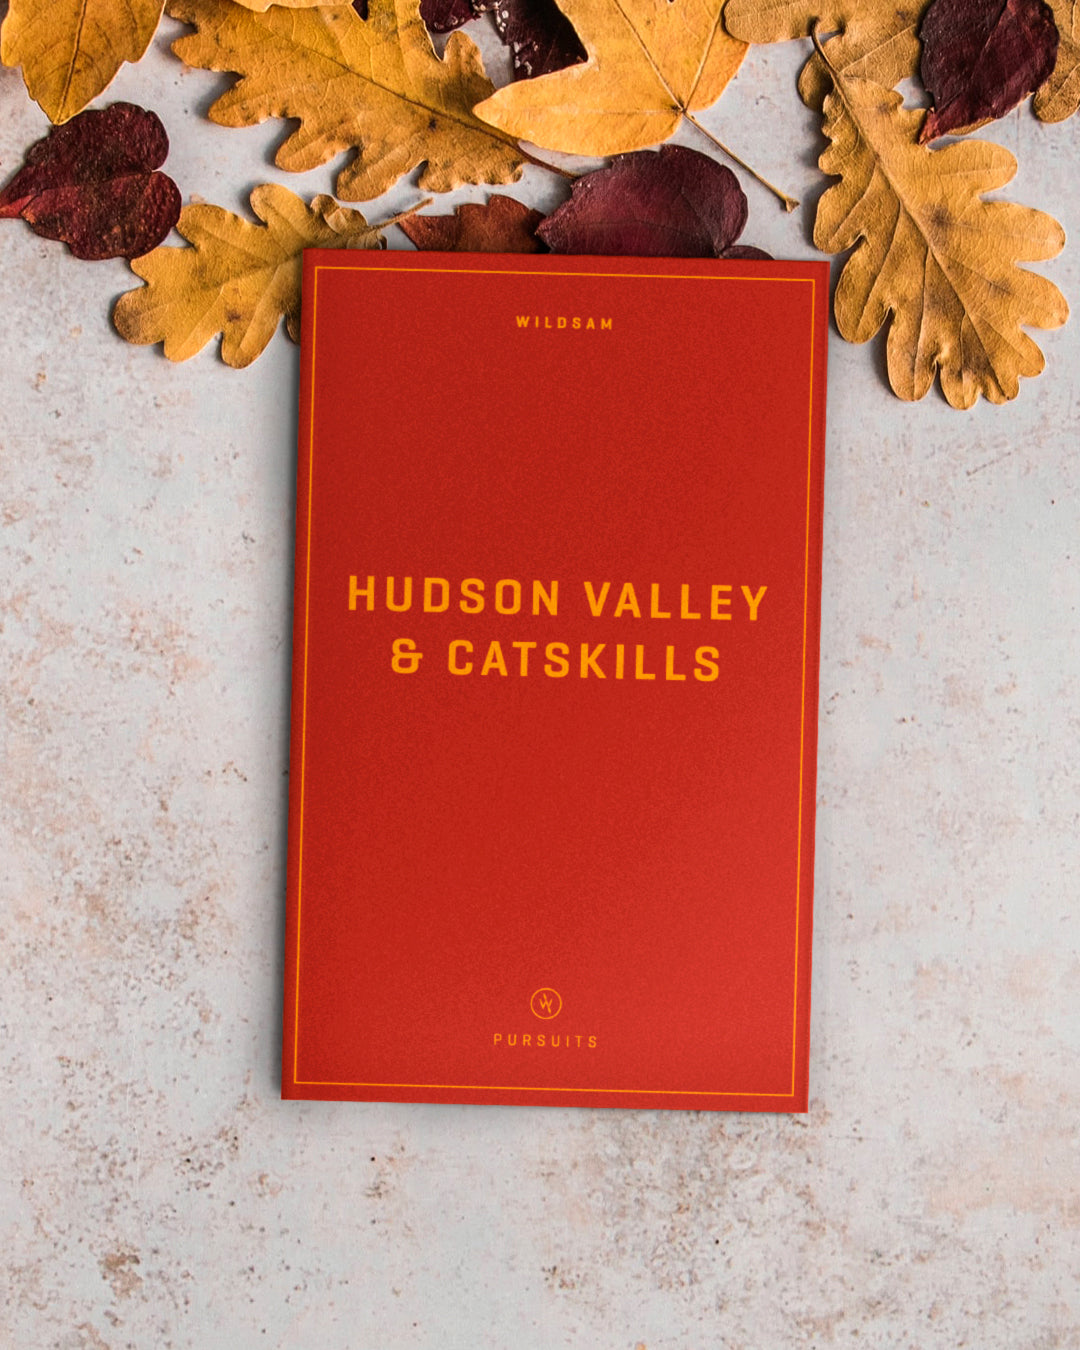 HUDSON VALLEY & CATSKILLS